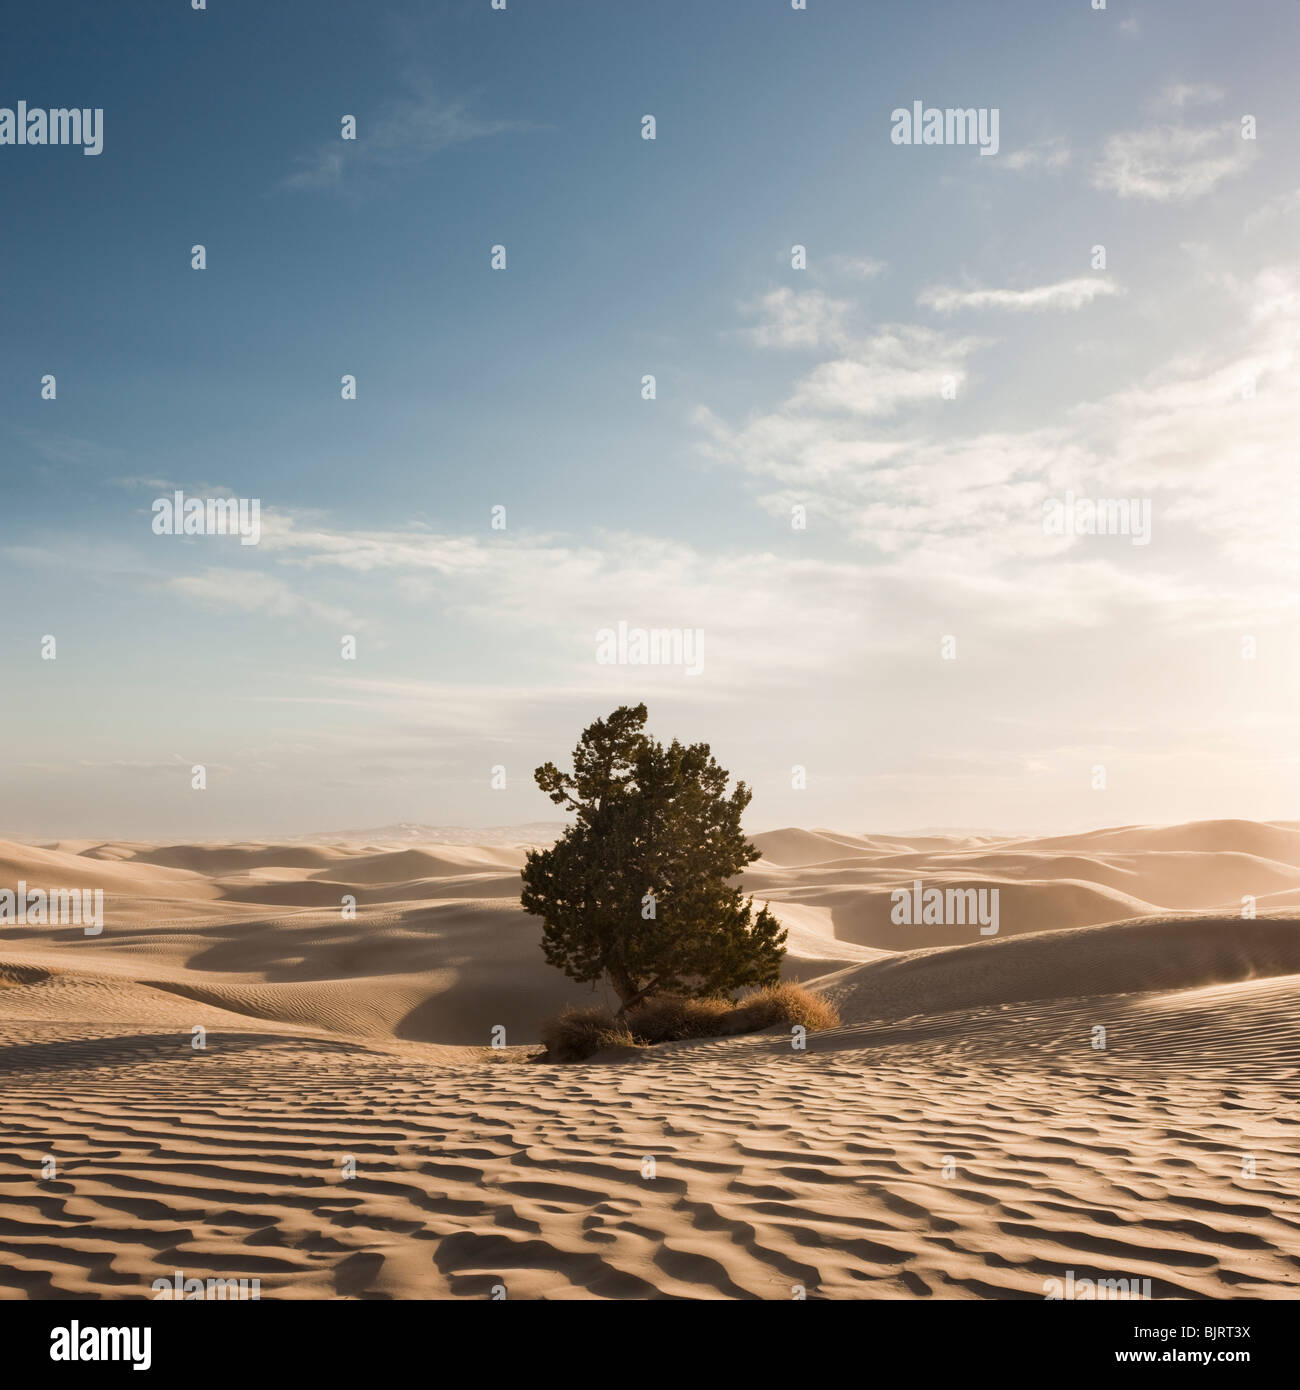 USA, Utah, Little Sahara, tree on desert Stock Photo